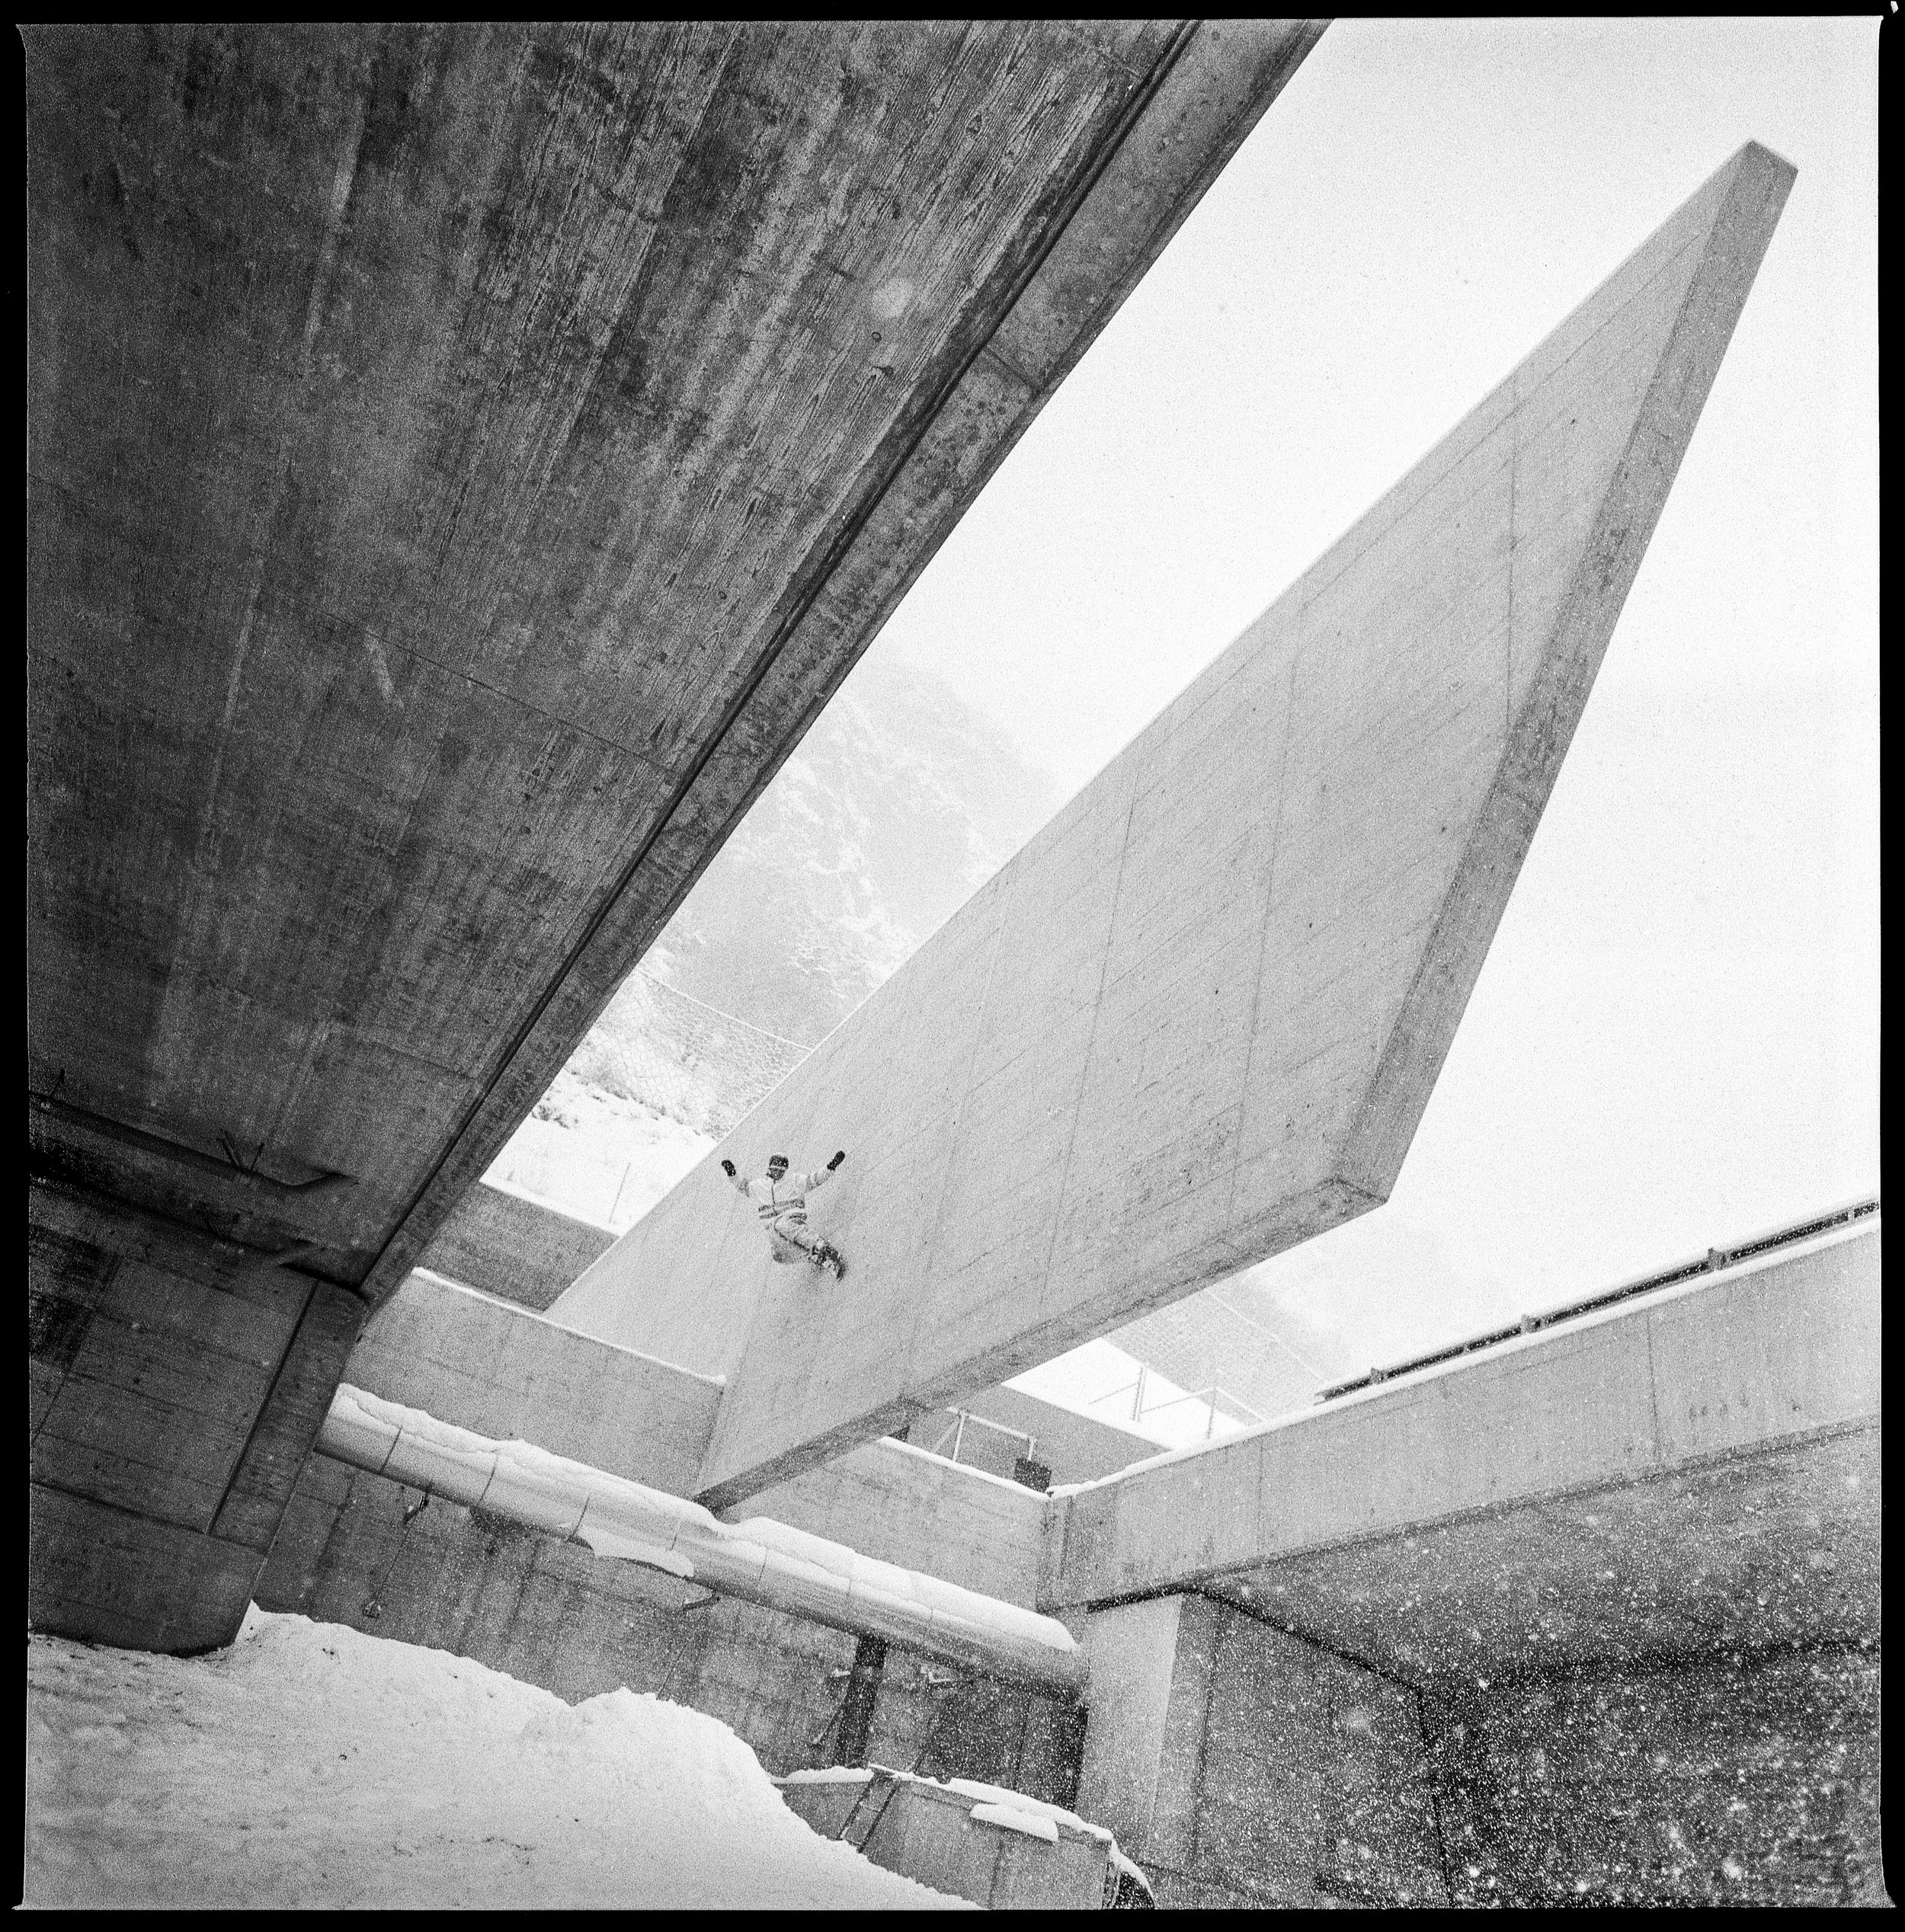 Gilles und Brutalismus, Autobahn im Bau, Visp